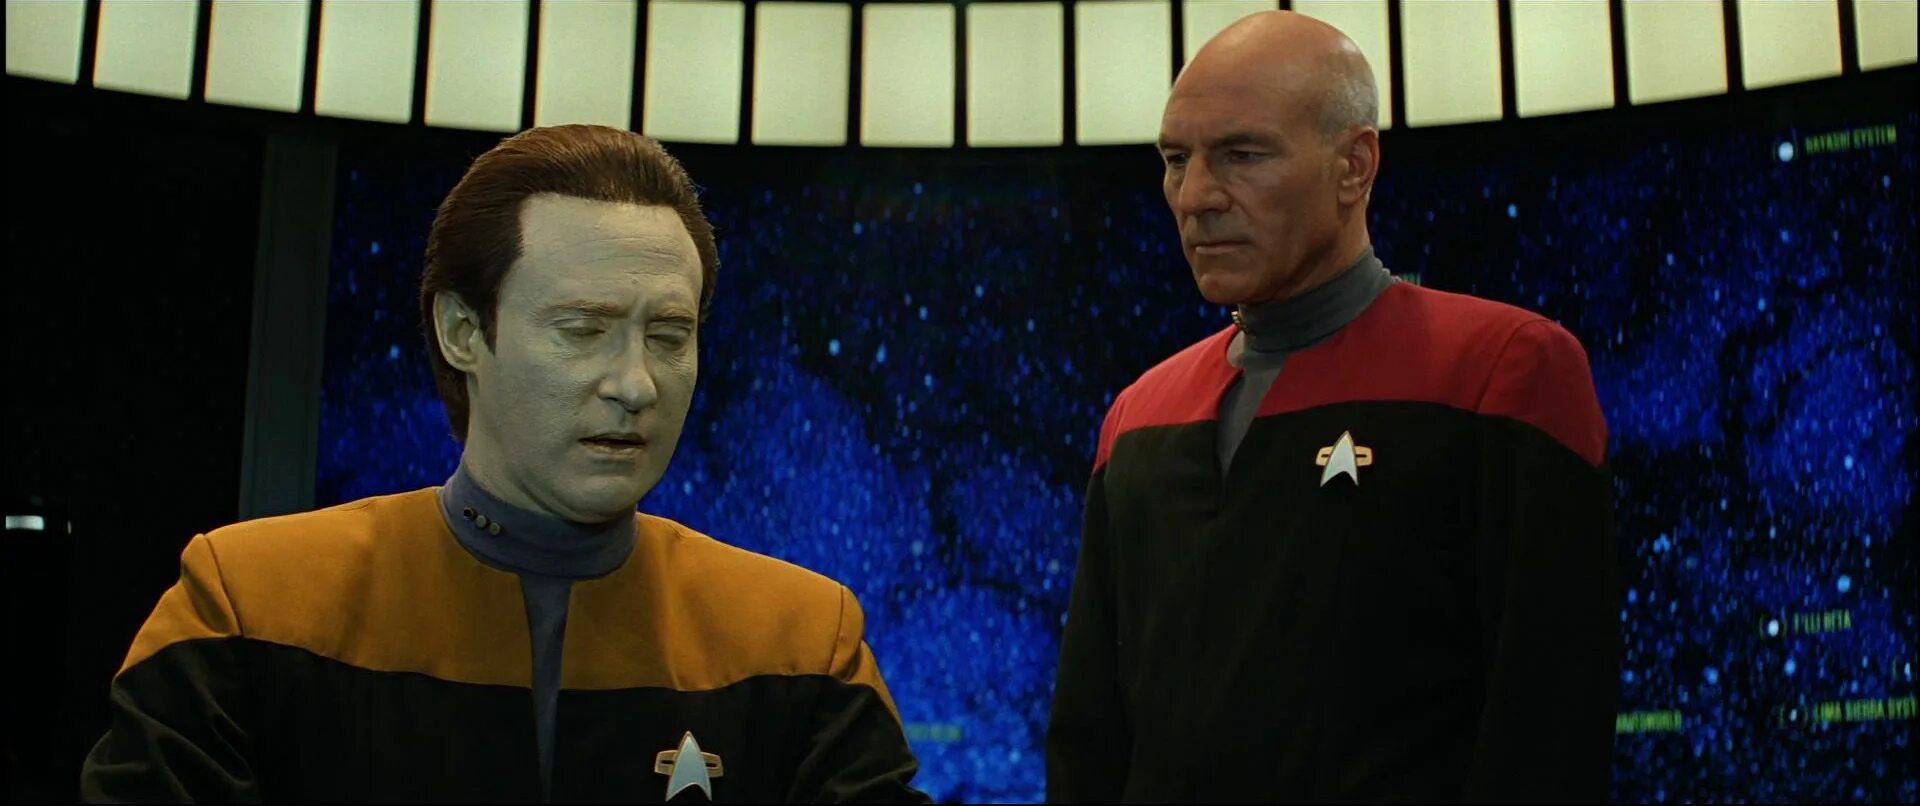 Новое поколение 7. Star Trek Generations 1994. Звёздный путь: поколения Кирк. Капитан Кирк Стартрек маска.